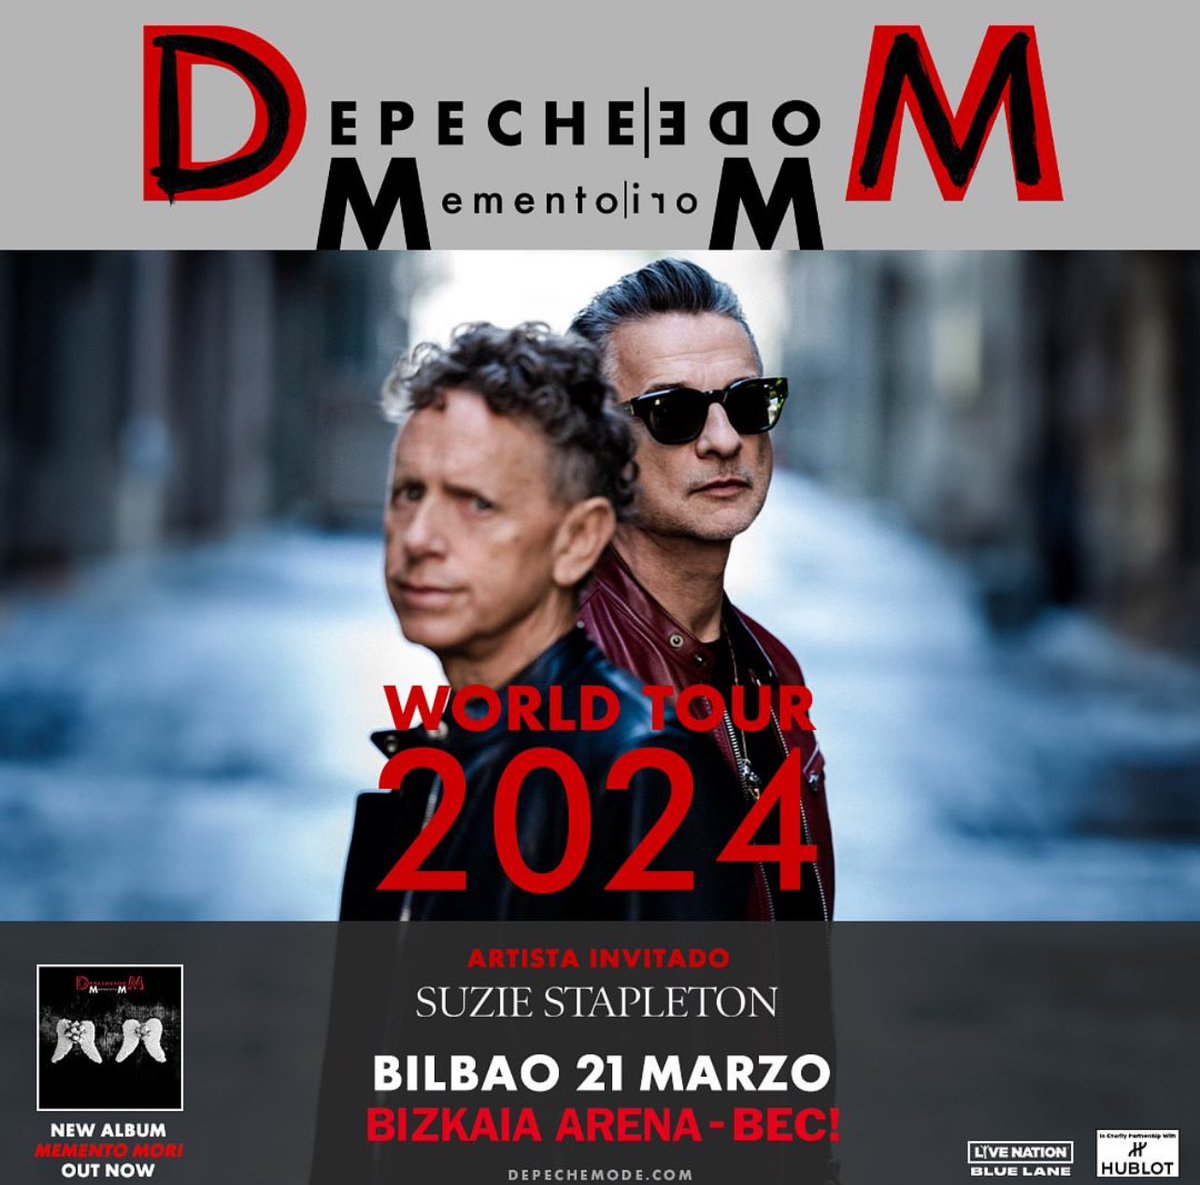 Hoy Depeche Mode con su gira Memento Mori en el BEC! 🙌🏻 Horarios ⏰ 21 de marzo de 2023 – Bizkaia Arena BEC, Barakaldo Acceso Early Entry Pista – 19:10h Apertura de puertas – 19:30h Suzie Stapleton– 20:20h Depeche Mode – 21:30h